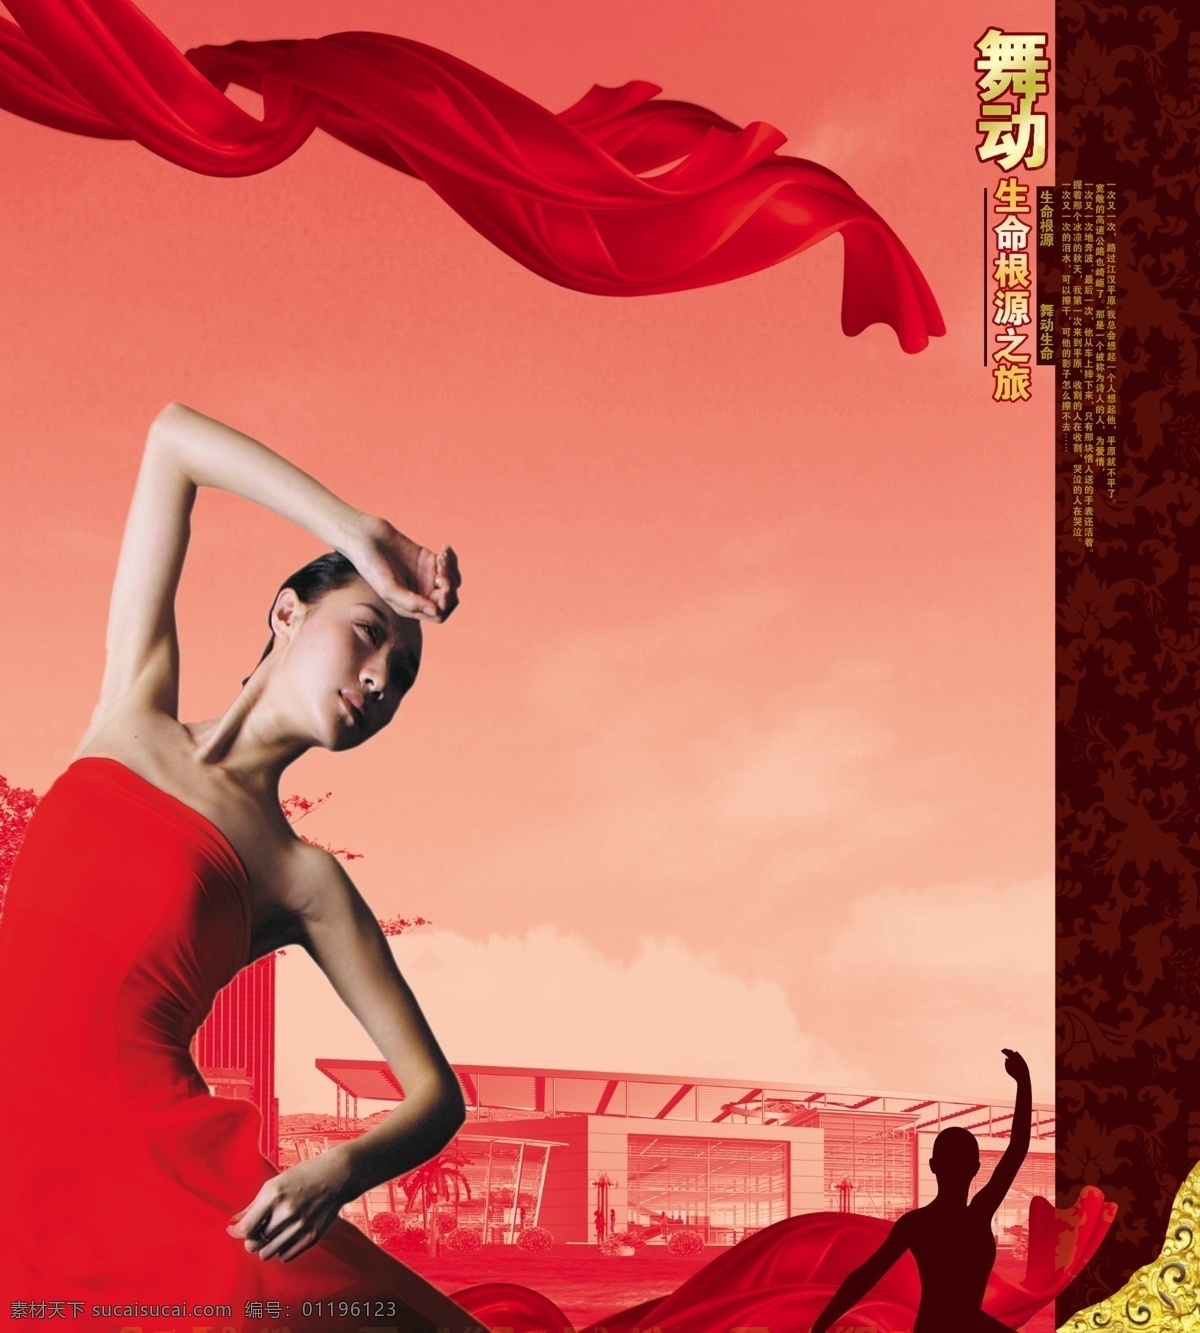 舞动 舞 美女 人物 舞蹈 房子 飘带 红色 花纹 花边 房地产 海报 广告设计模板 房地产广告 源文件库